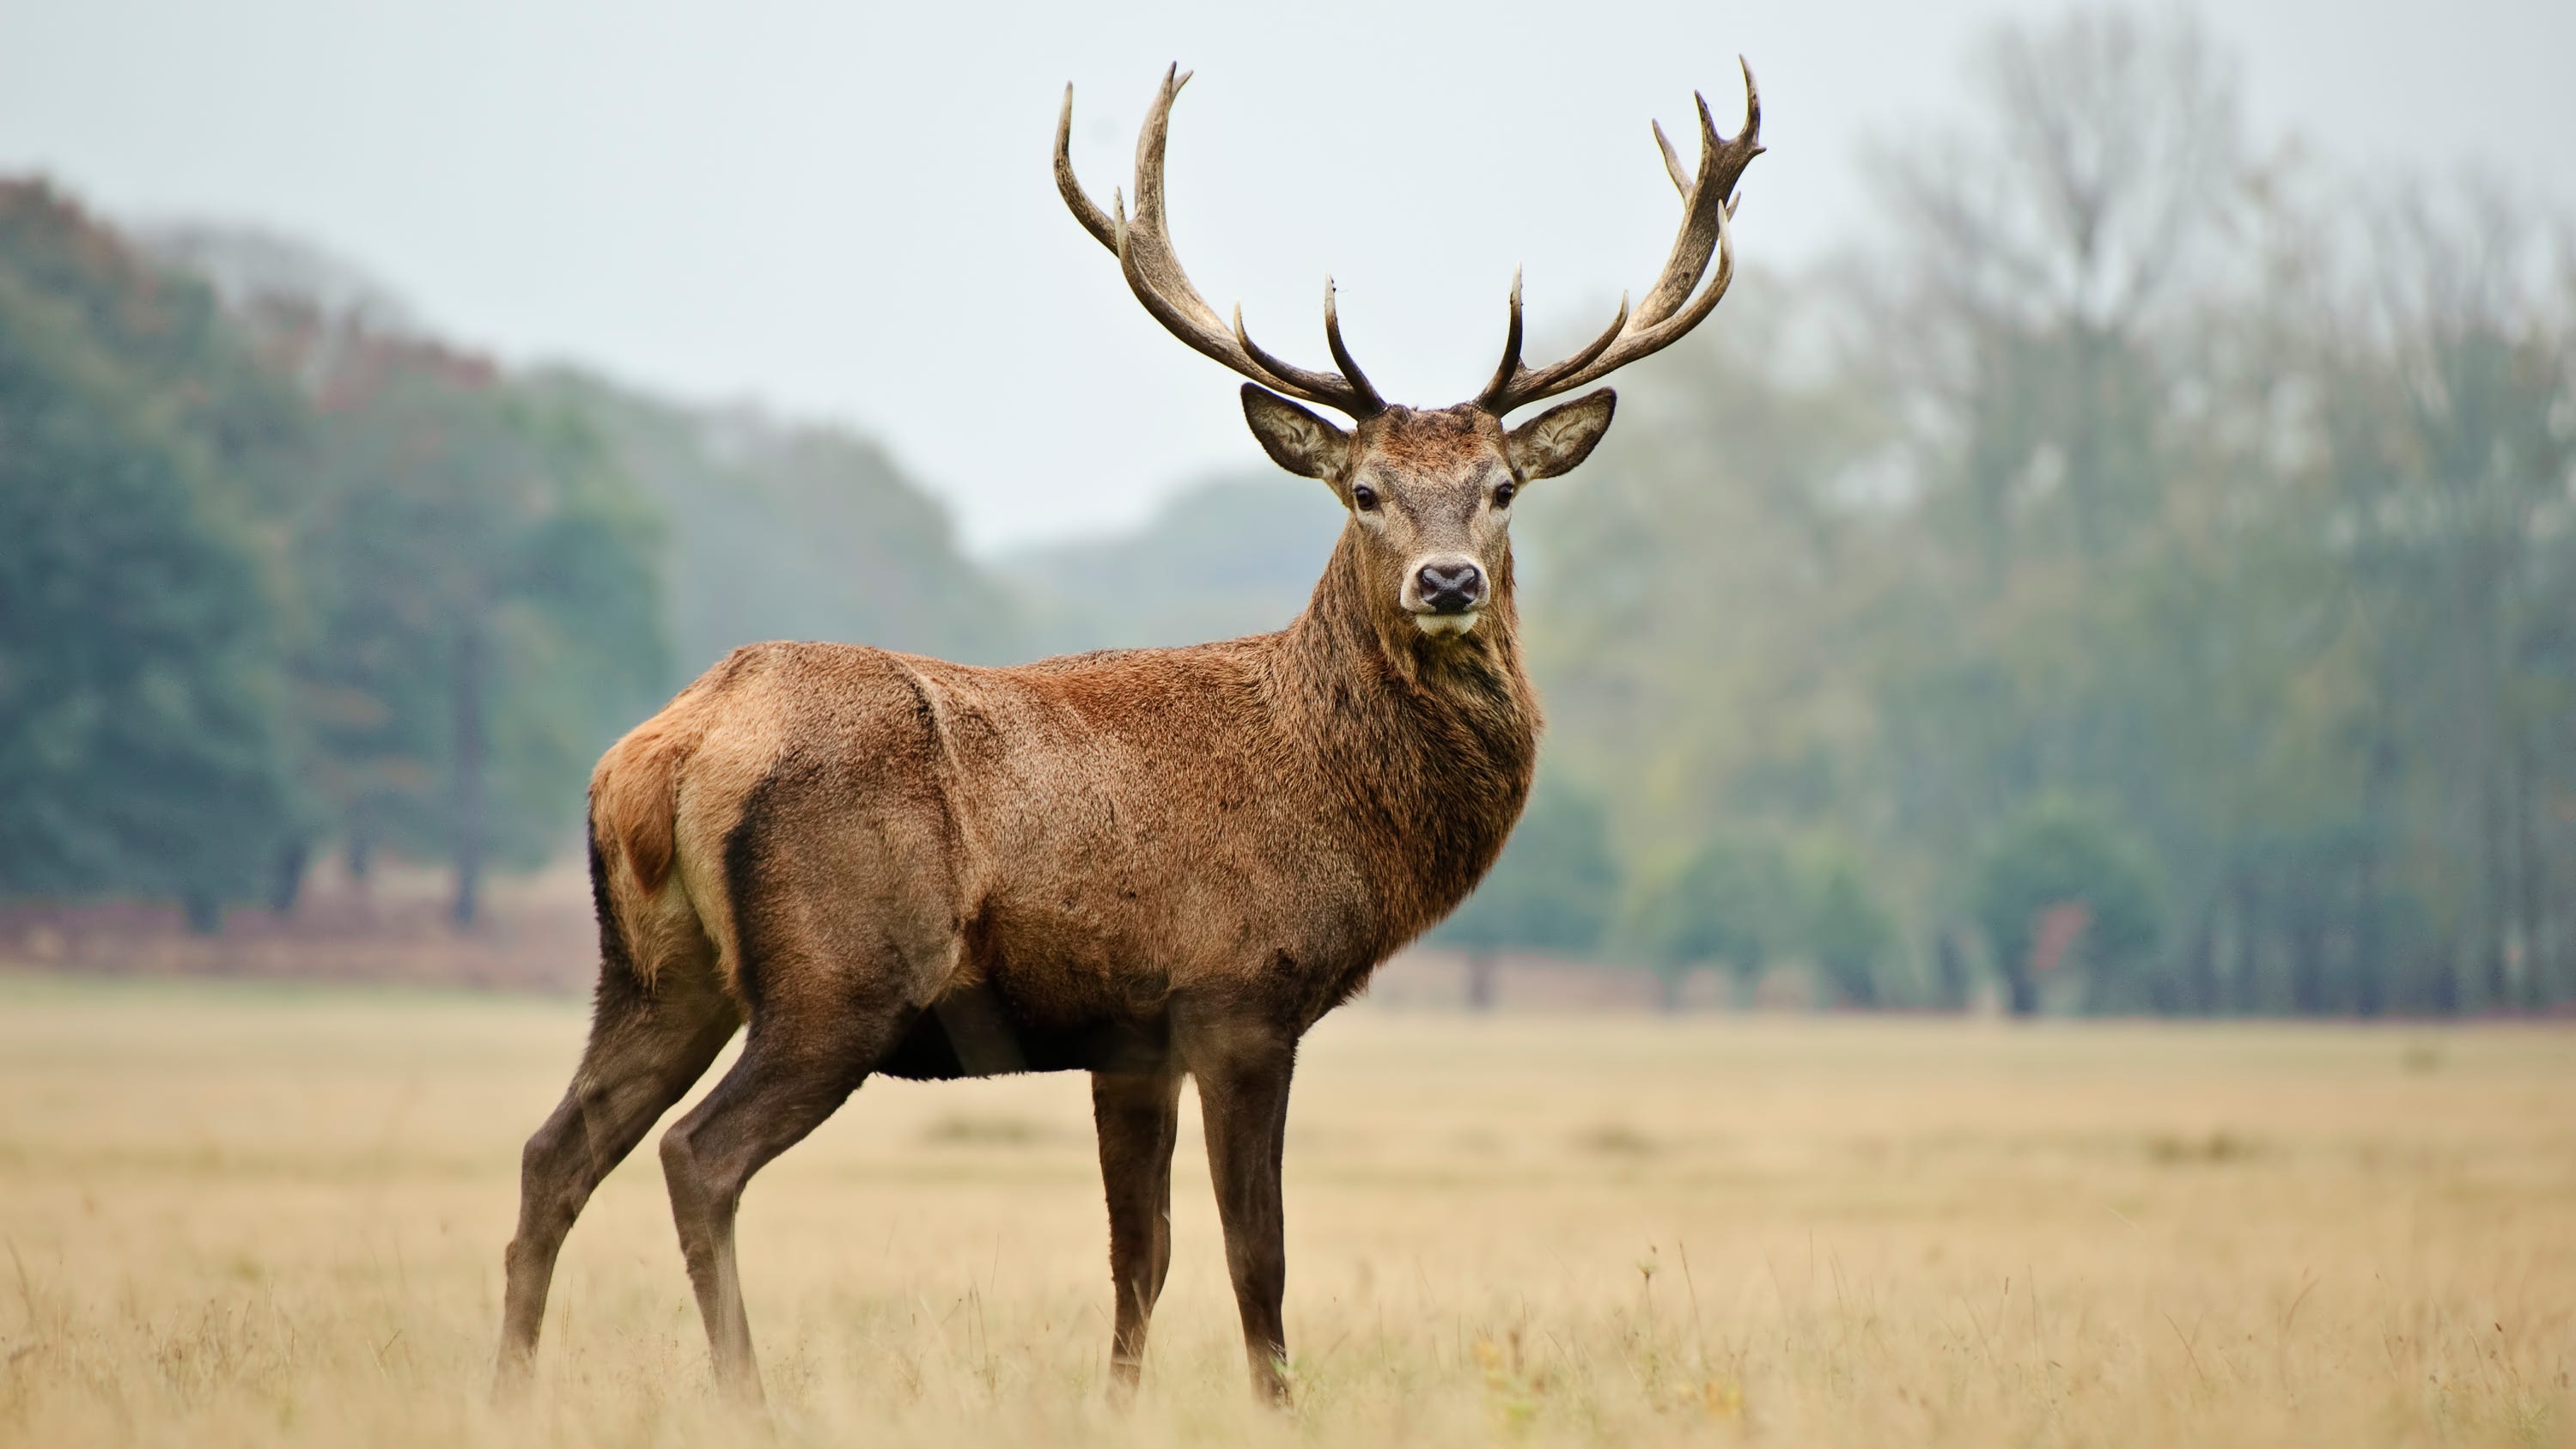 Luke Bryan's red stag deer: Reward offered after deer was shot, killed